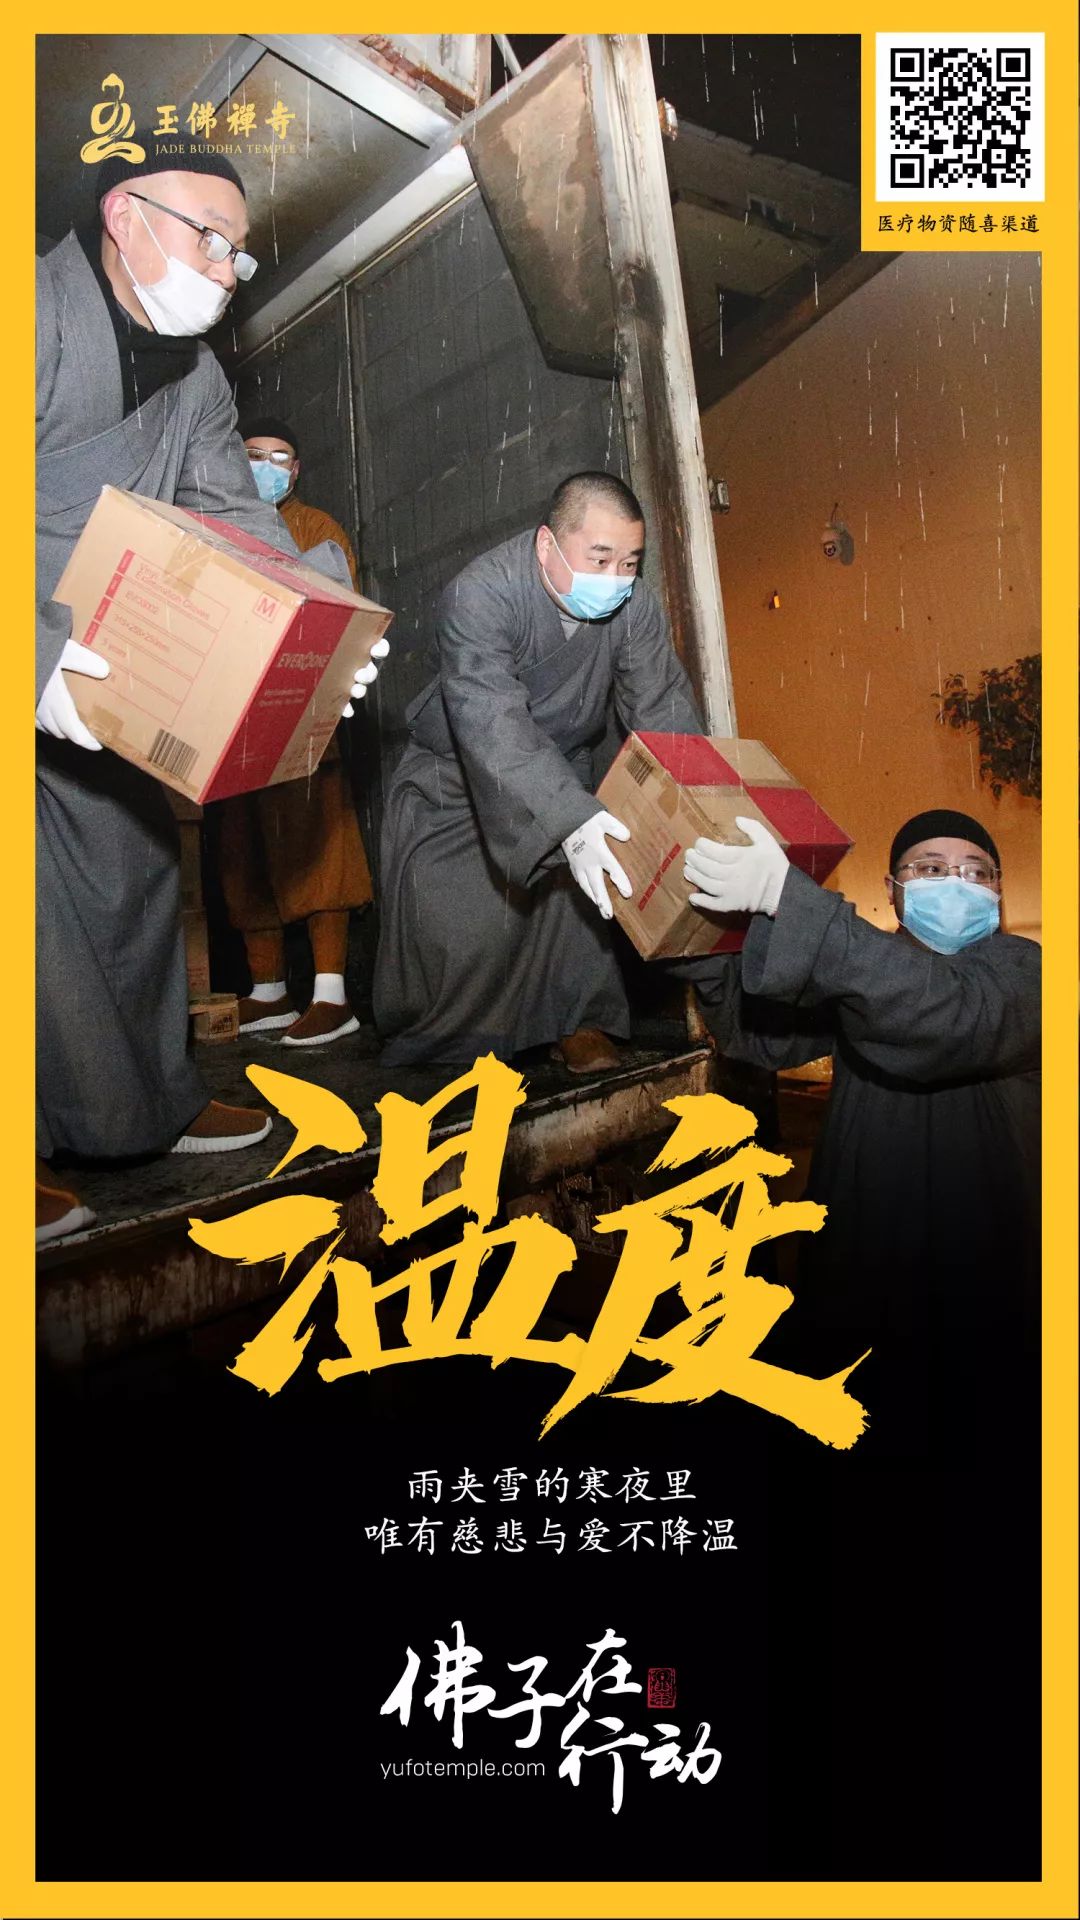 四众一心，大愿同行！上海玉佛禅寺发起联合捐赠，大批抗疫医疗物资已送到一线